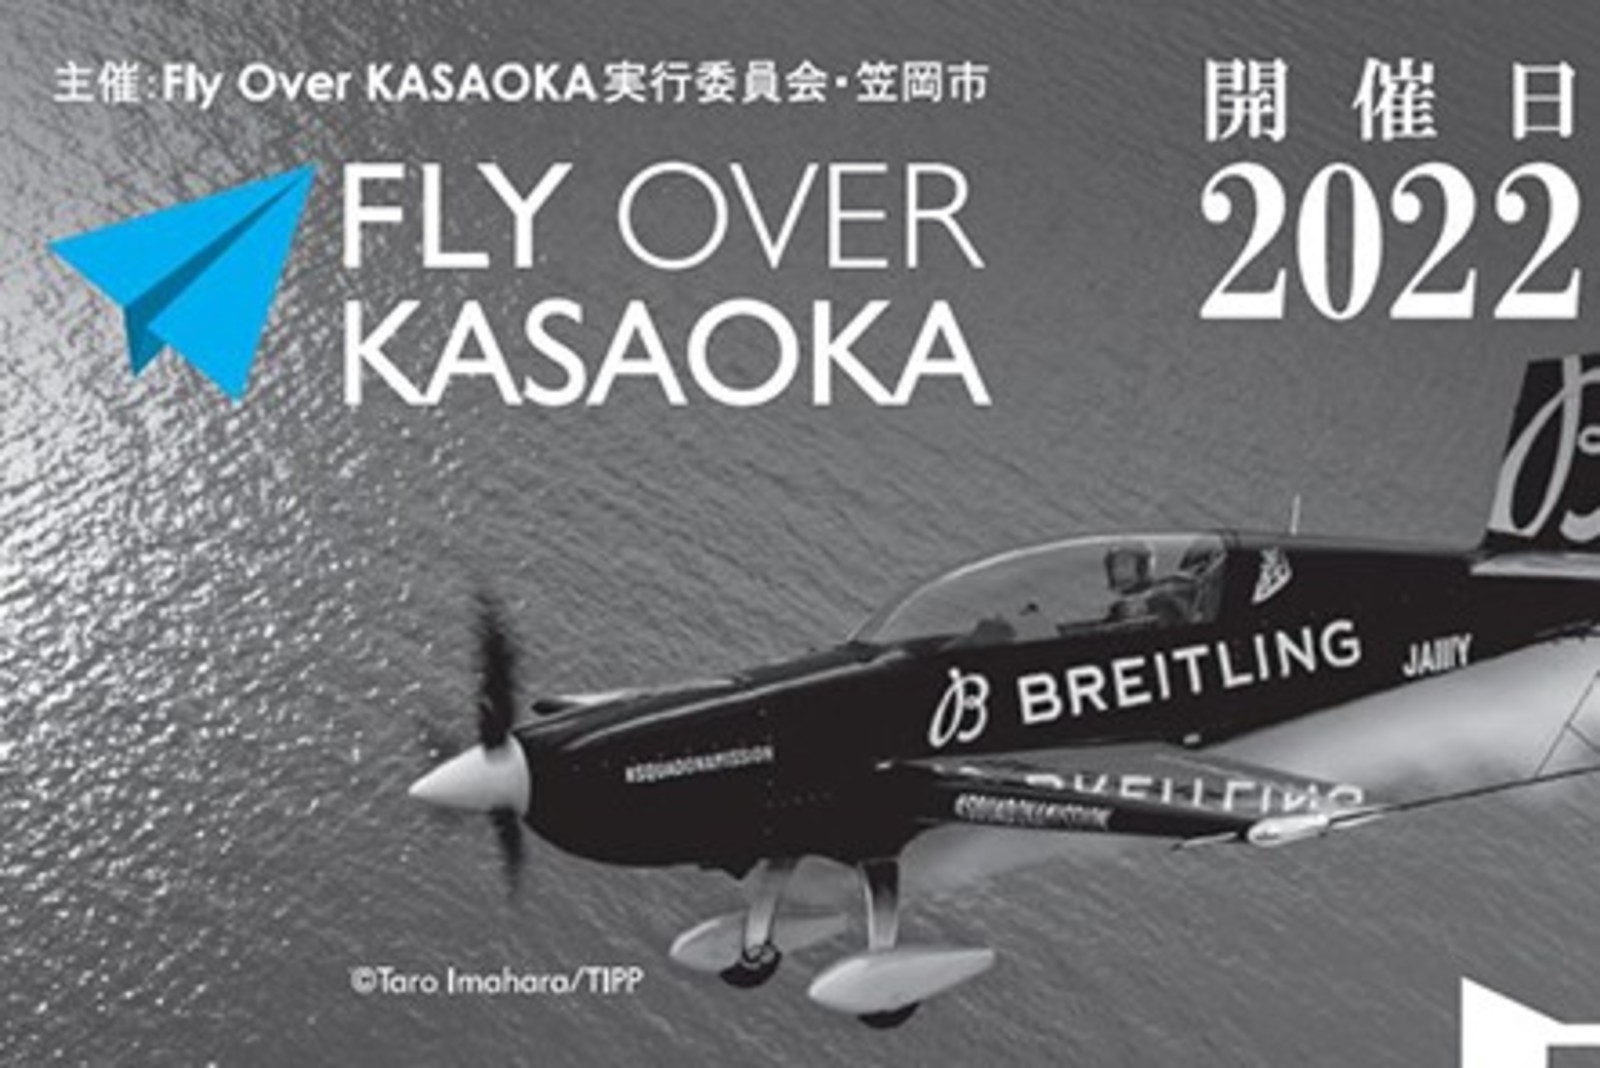 Fly Over KASAOKA 2022